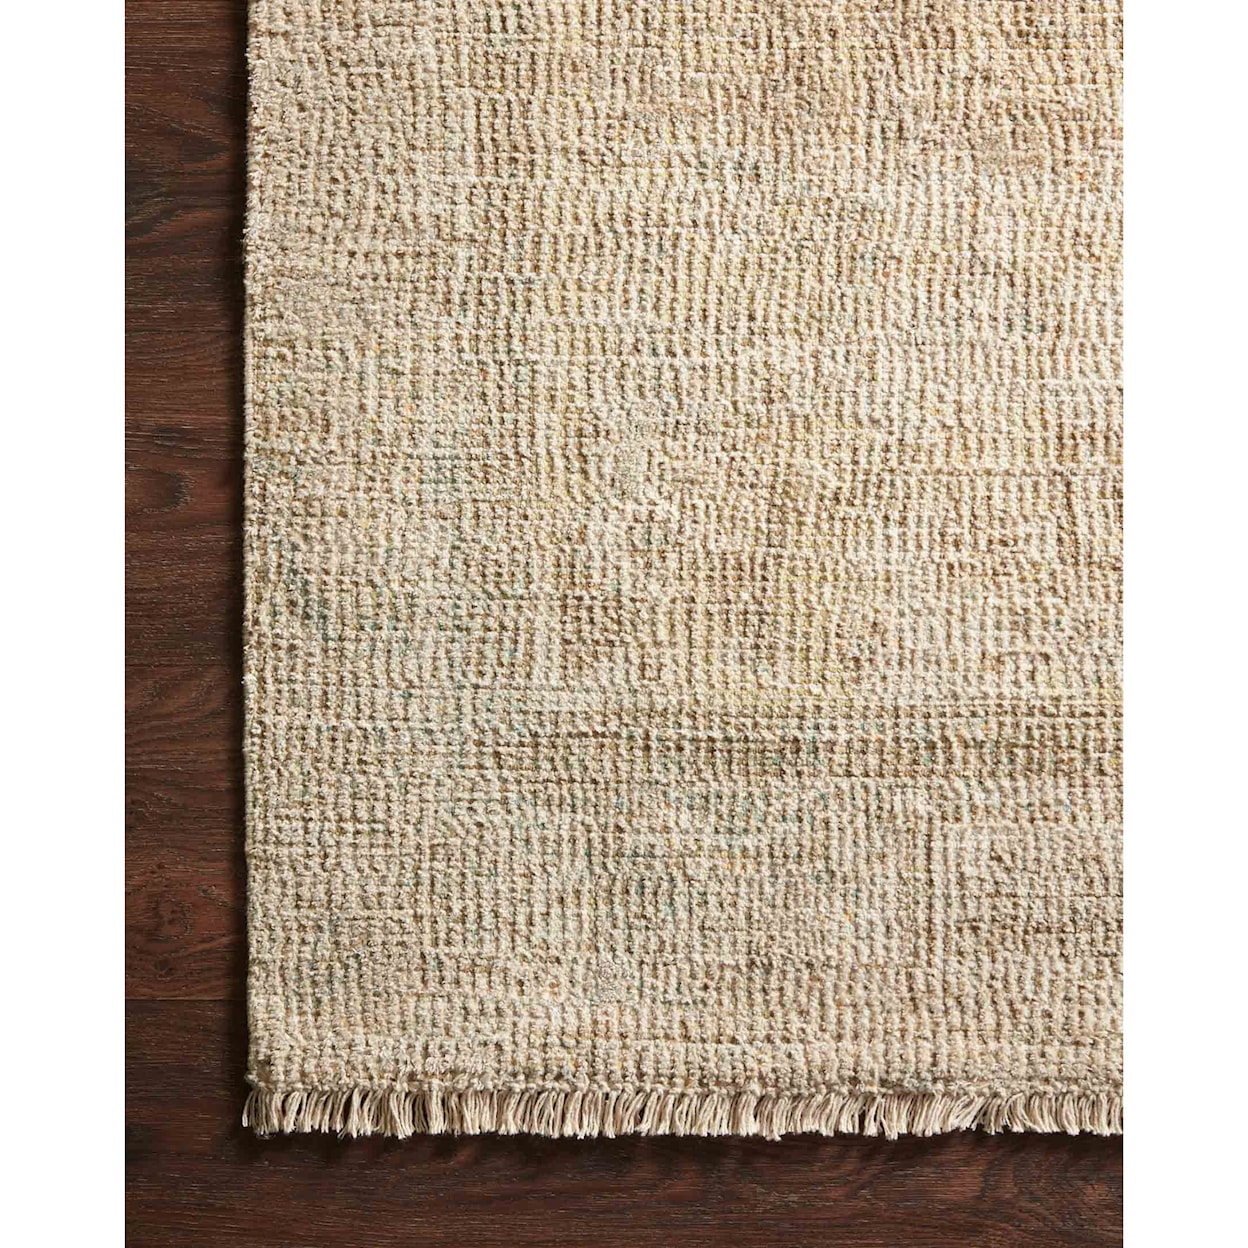 Reeds Rugs Priya 8'6" x 12' Ocean / Ivory Rug